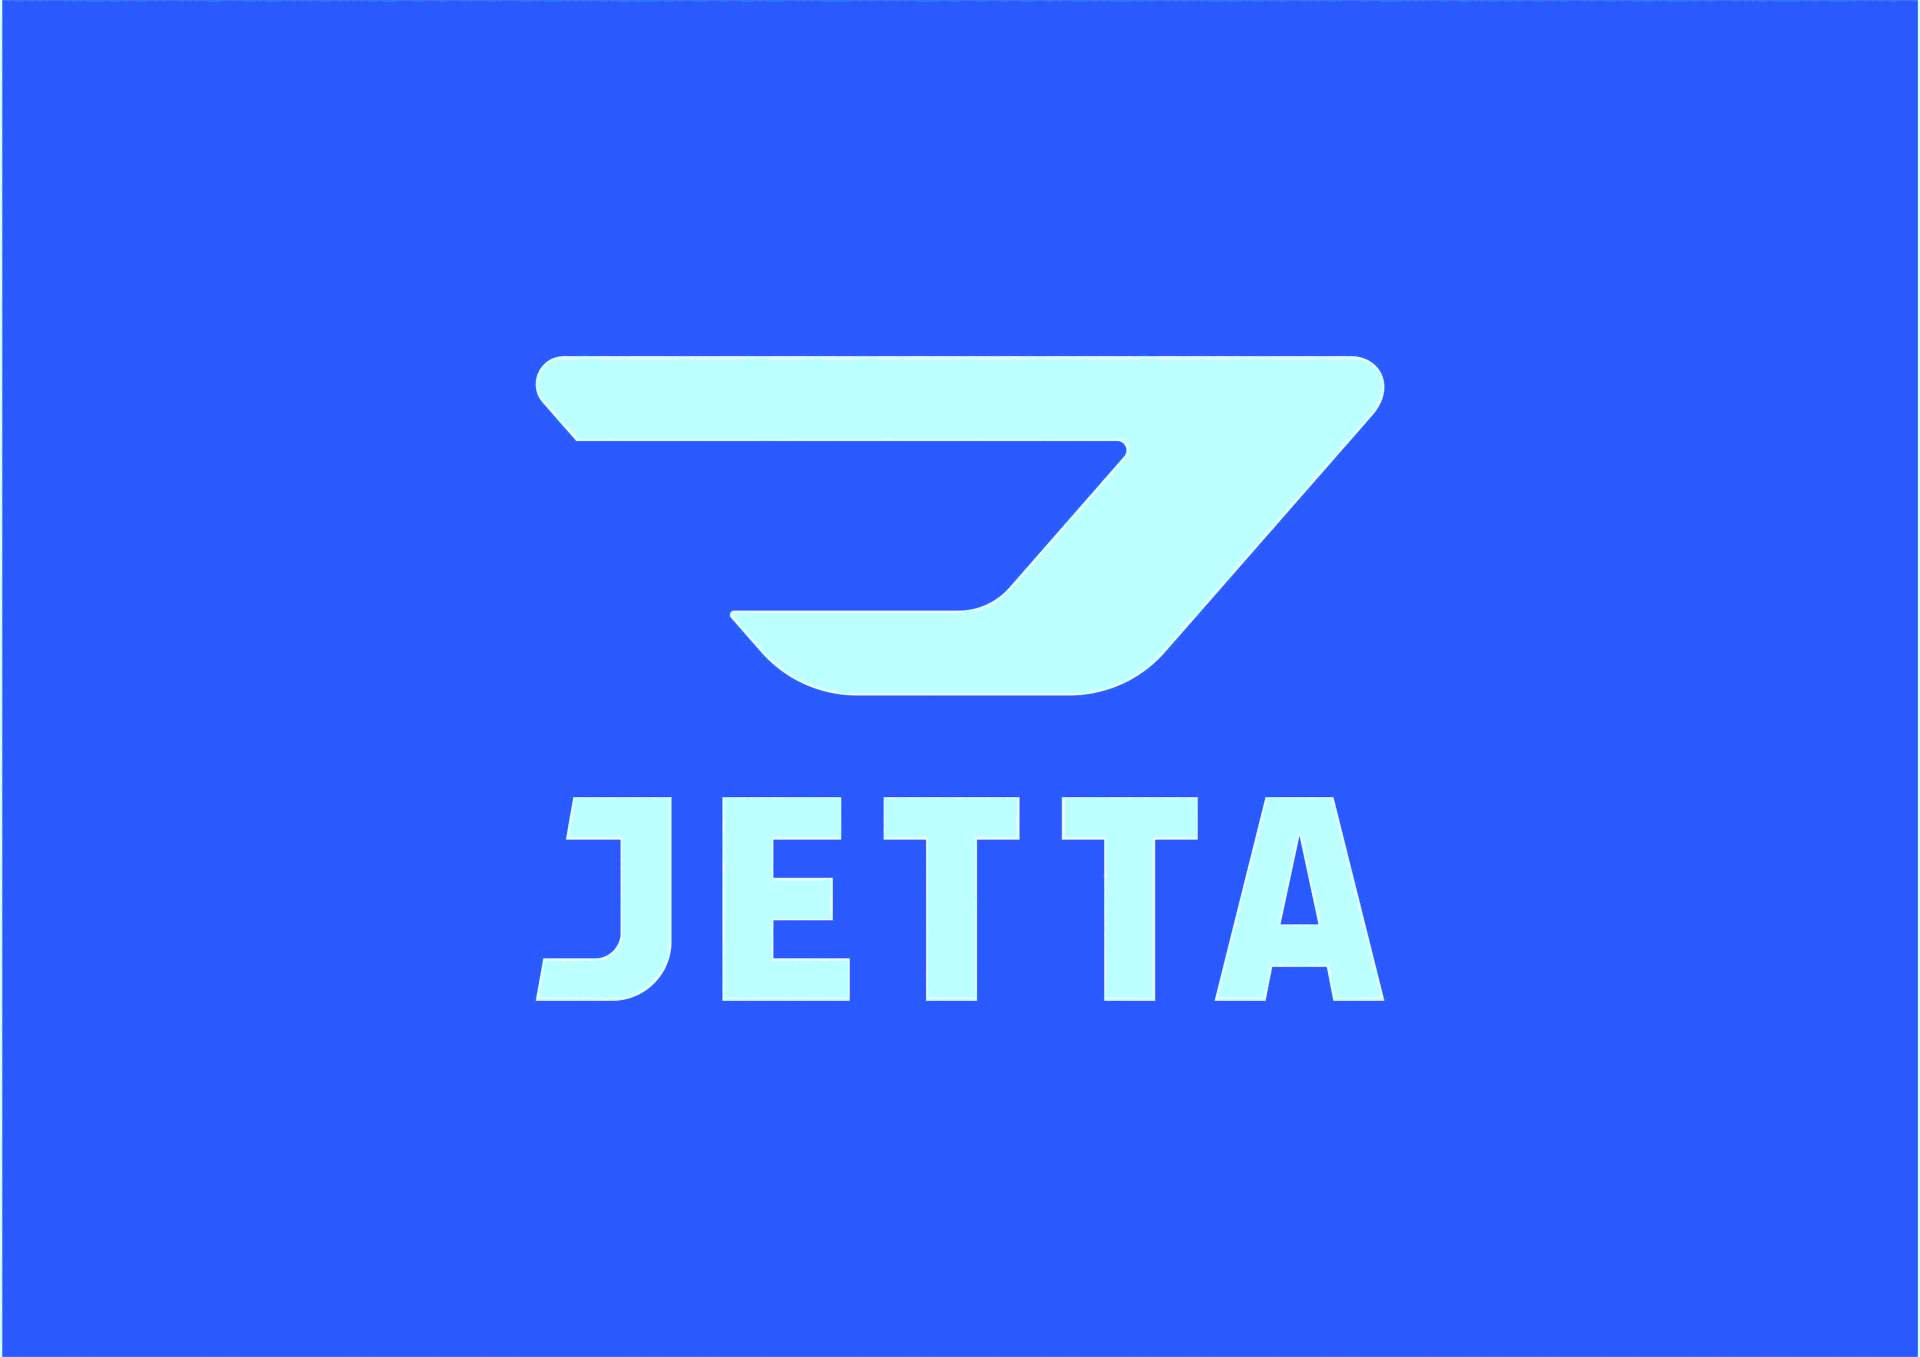 b7273d63-jetta-brand-logo.jpg